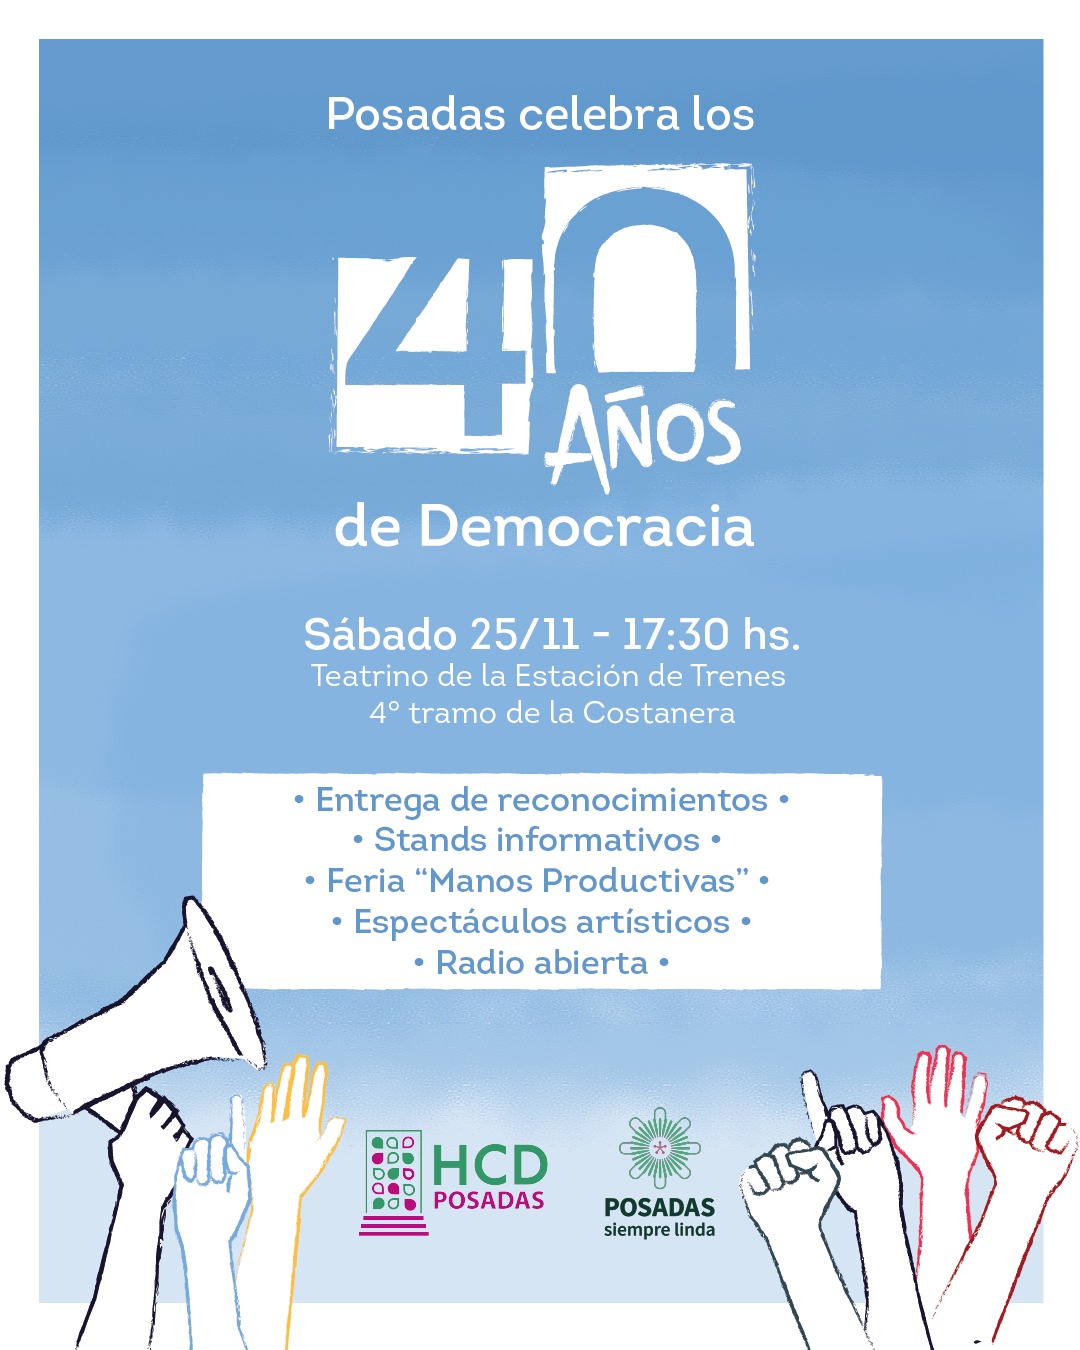 Posadas celebrará este sábado los 40 años de democracia